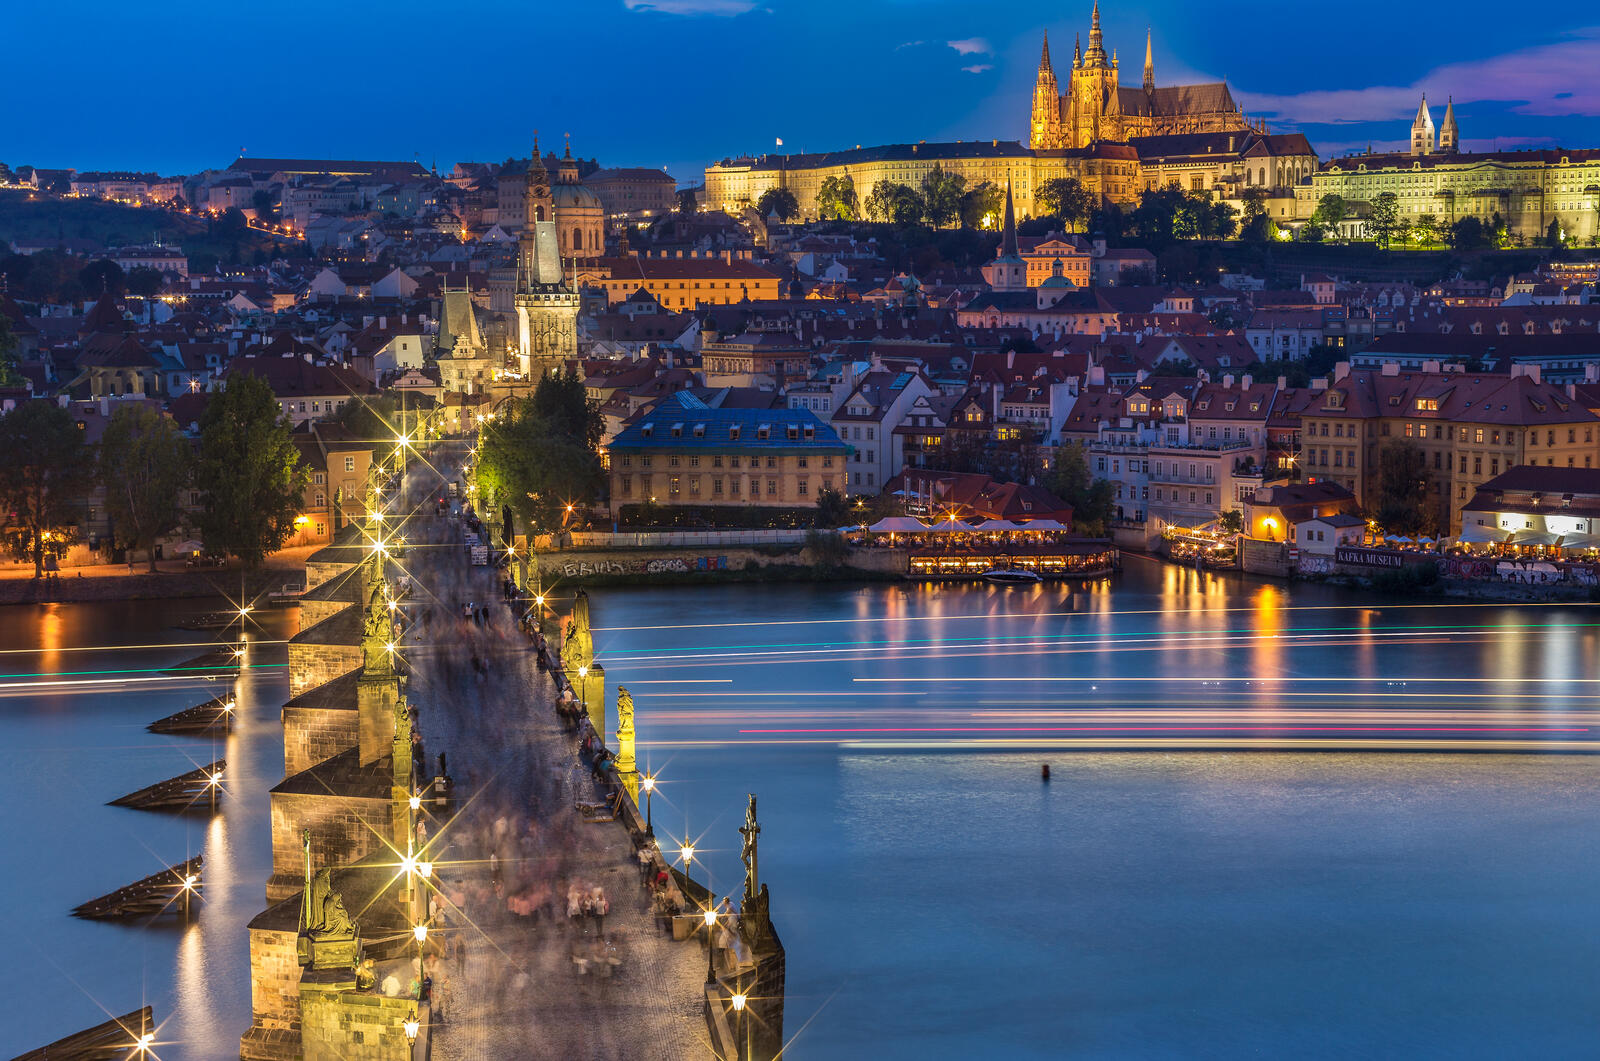 Wallpapers Vltava River night cities Czech Republic on the desktop